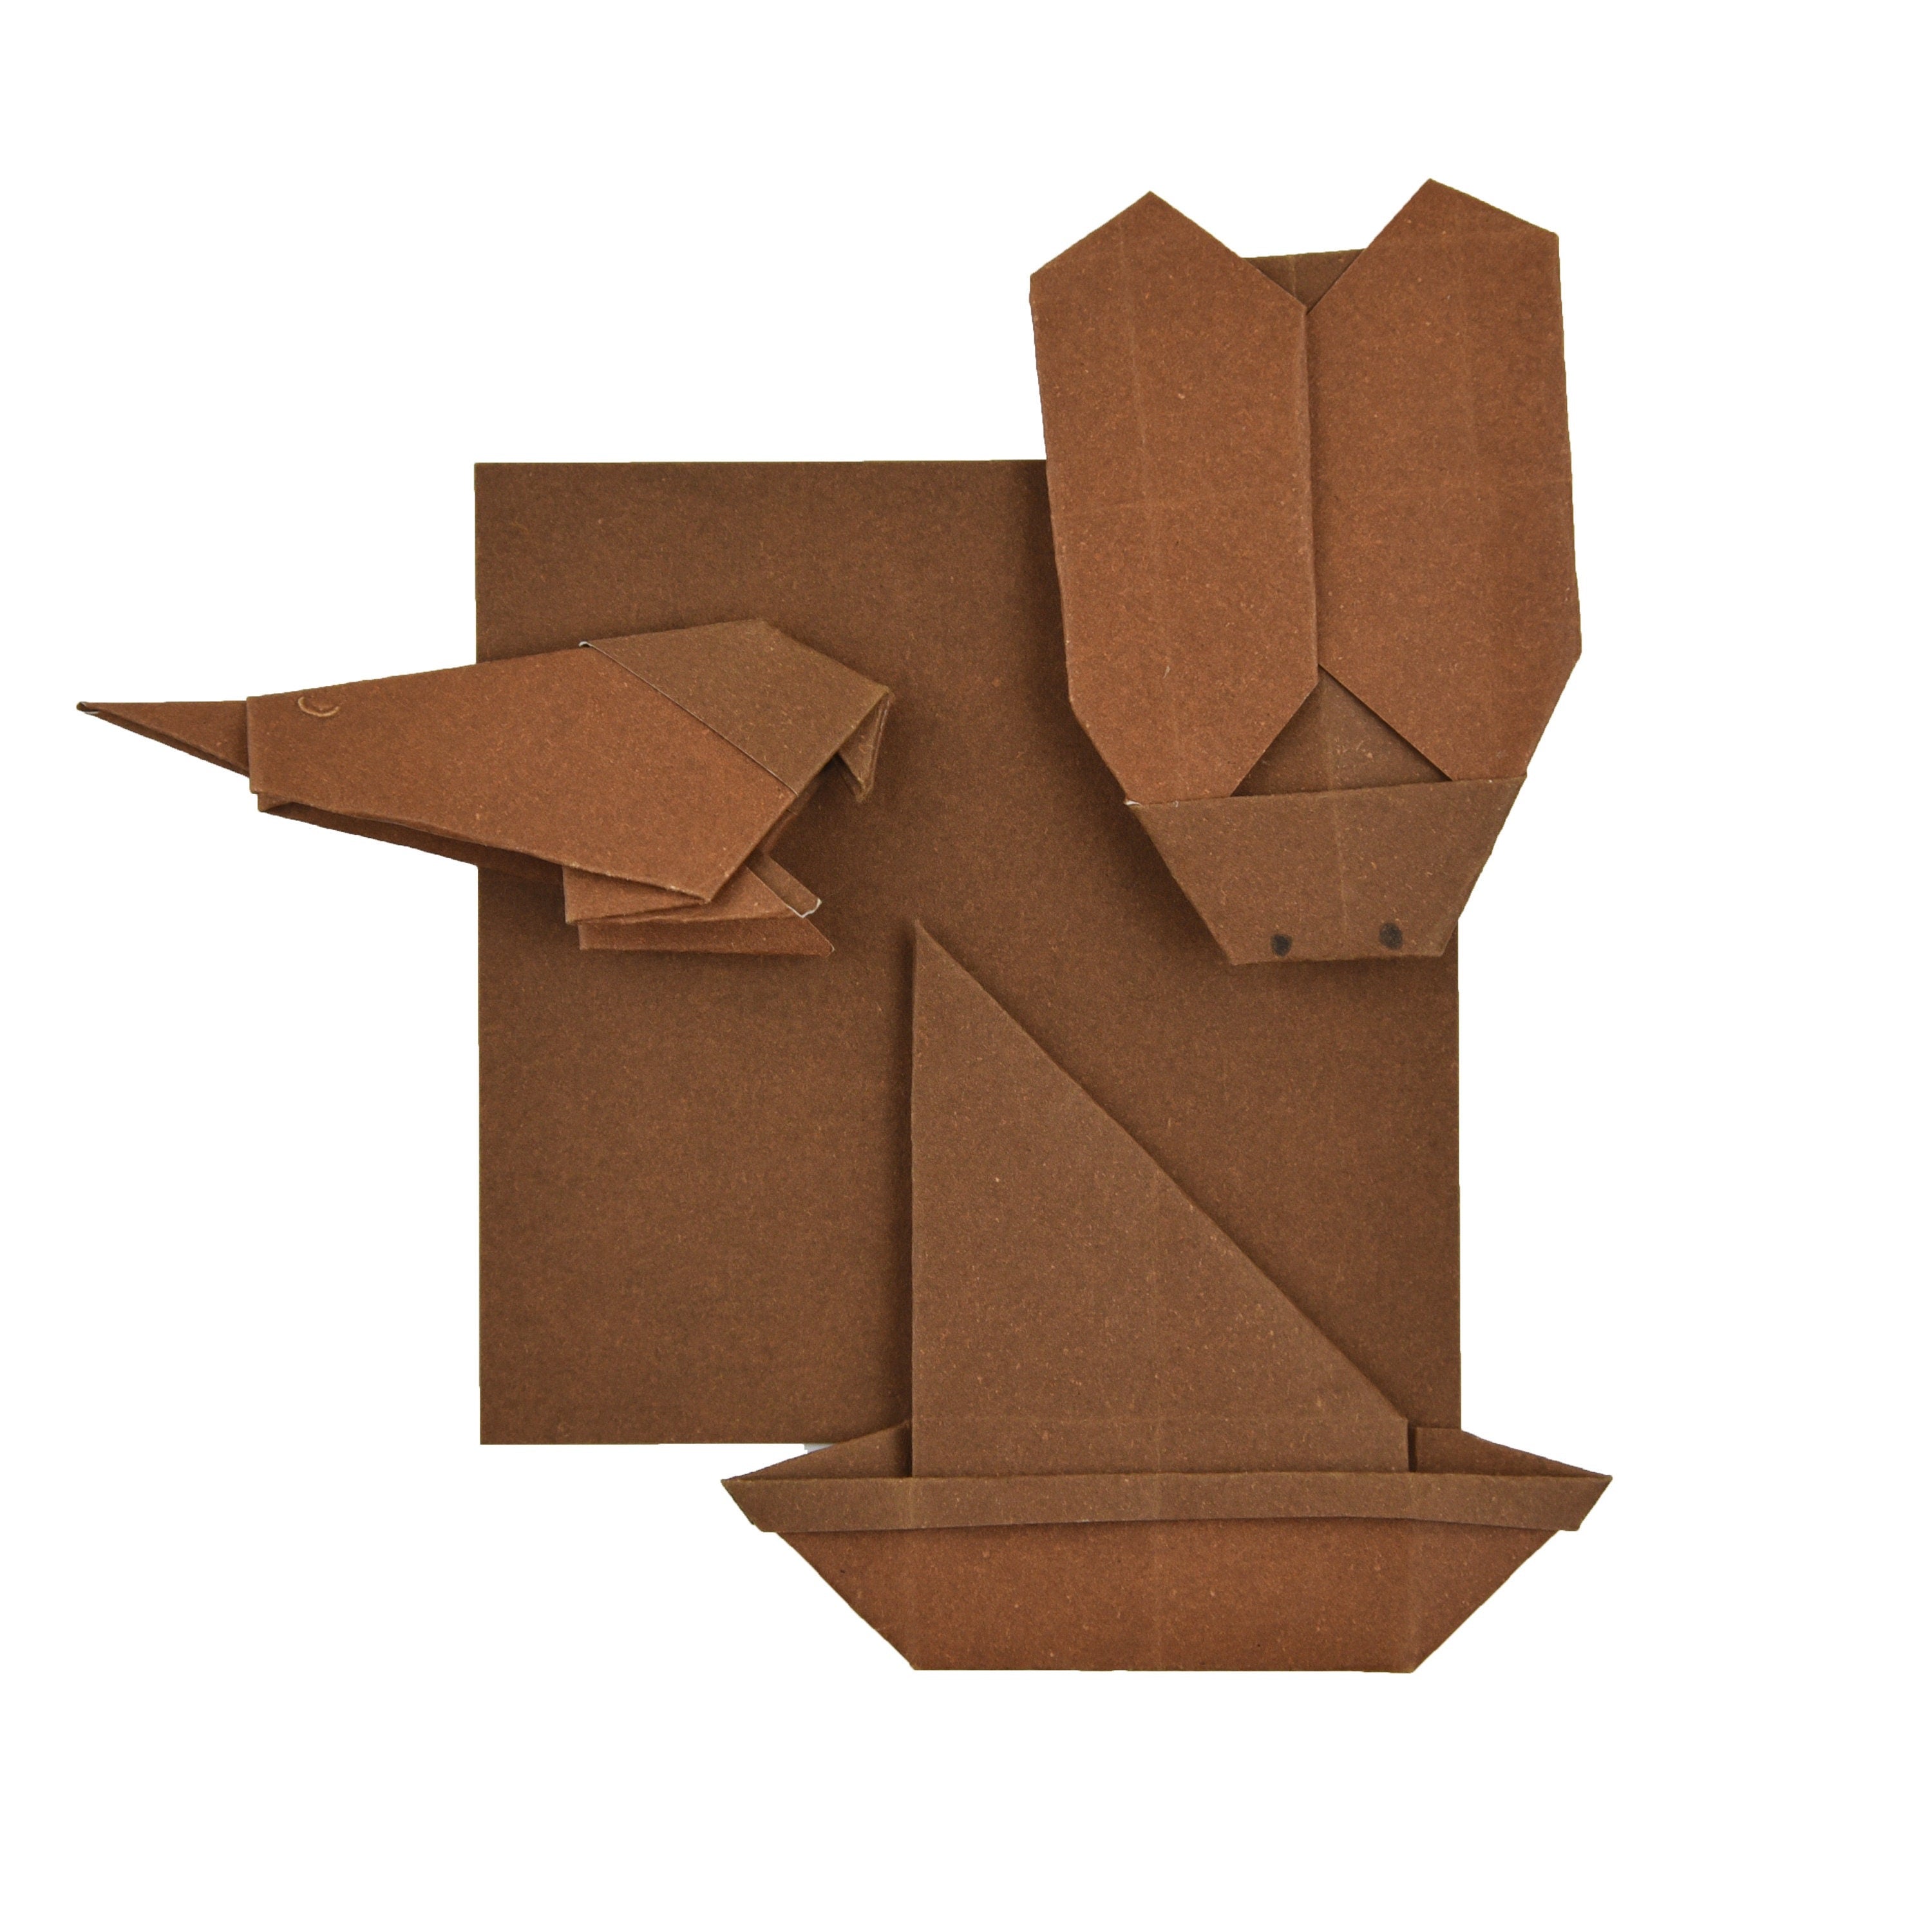 100 fogli di carta origami base - 6x6 pollici - Confezione di carta quadrata per piegare, gru origami e decorazioni - S27